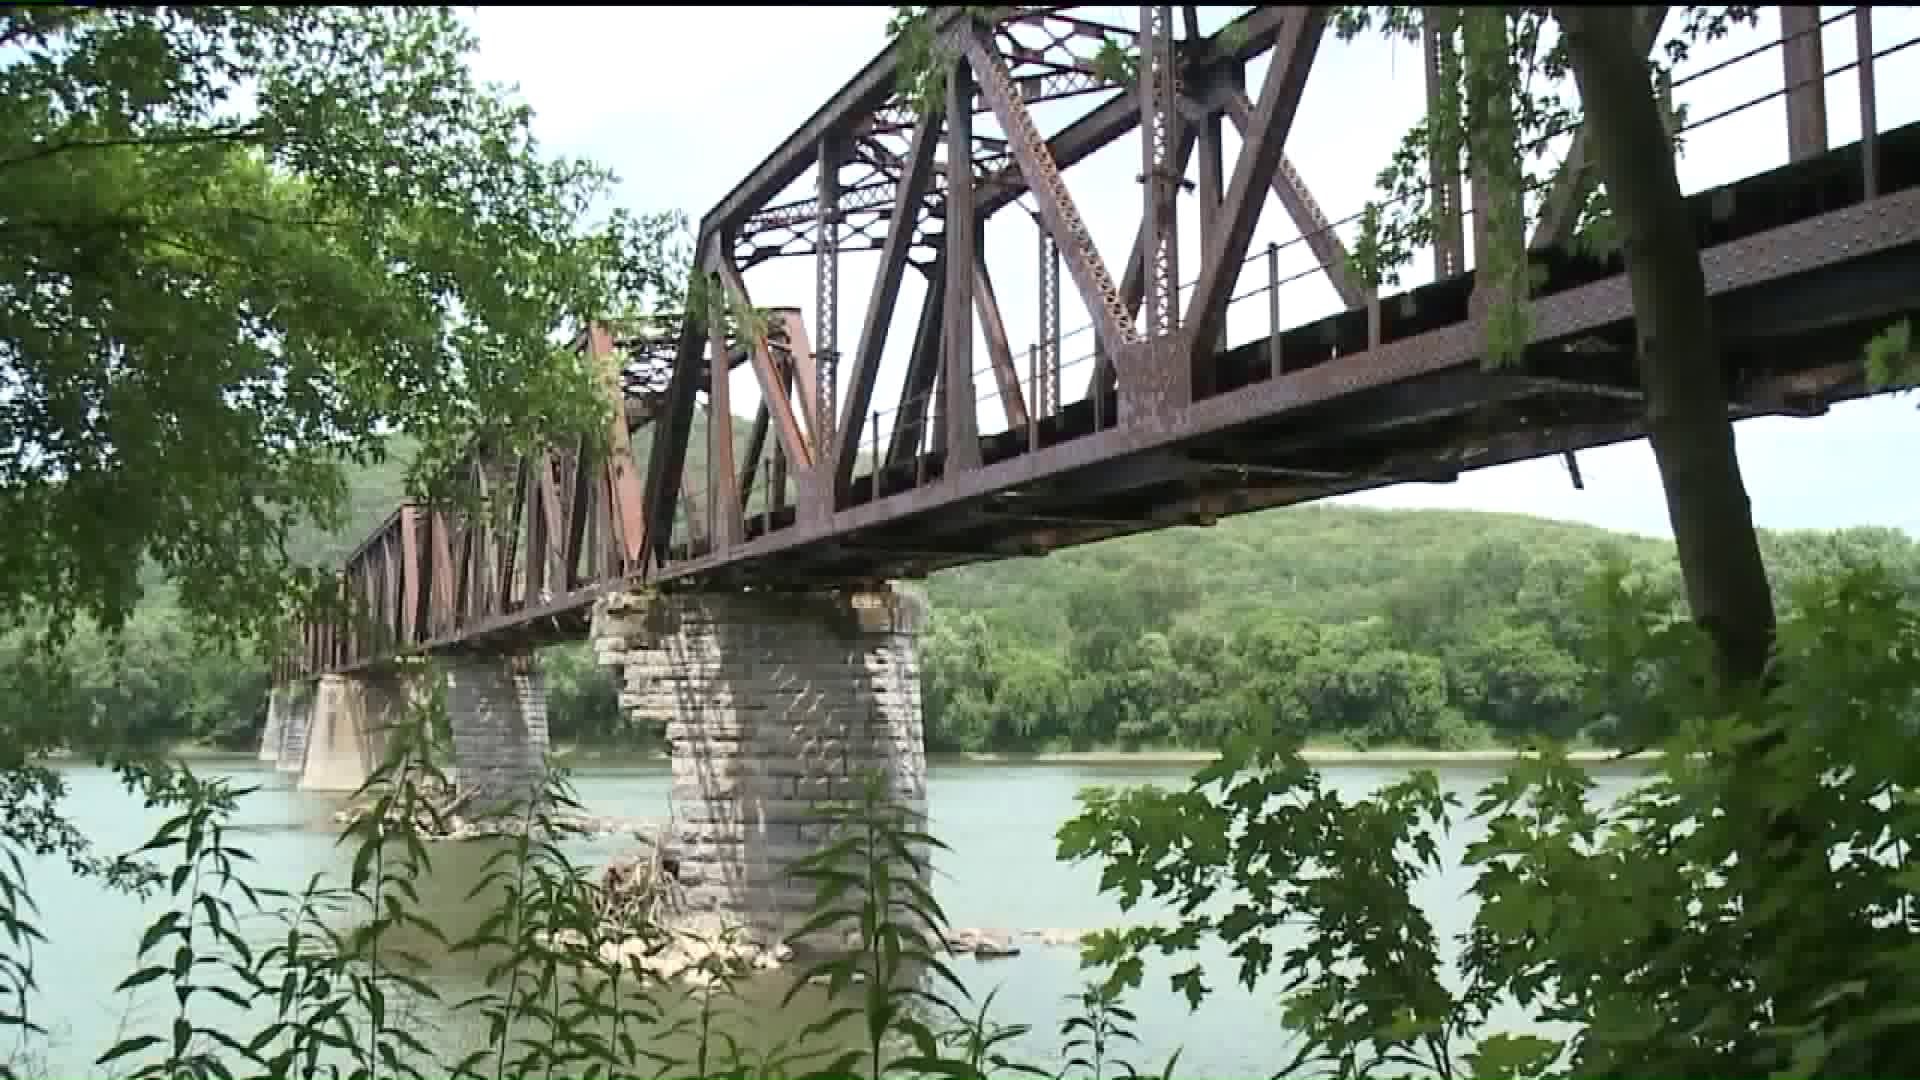 Coxton Railroad Bridge to be Removed